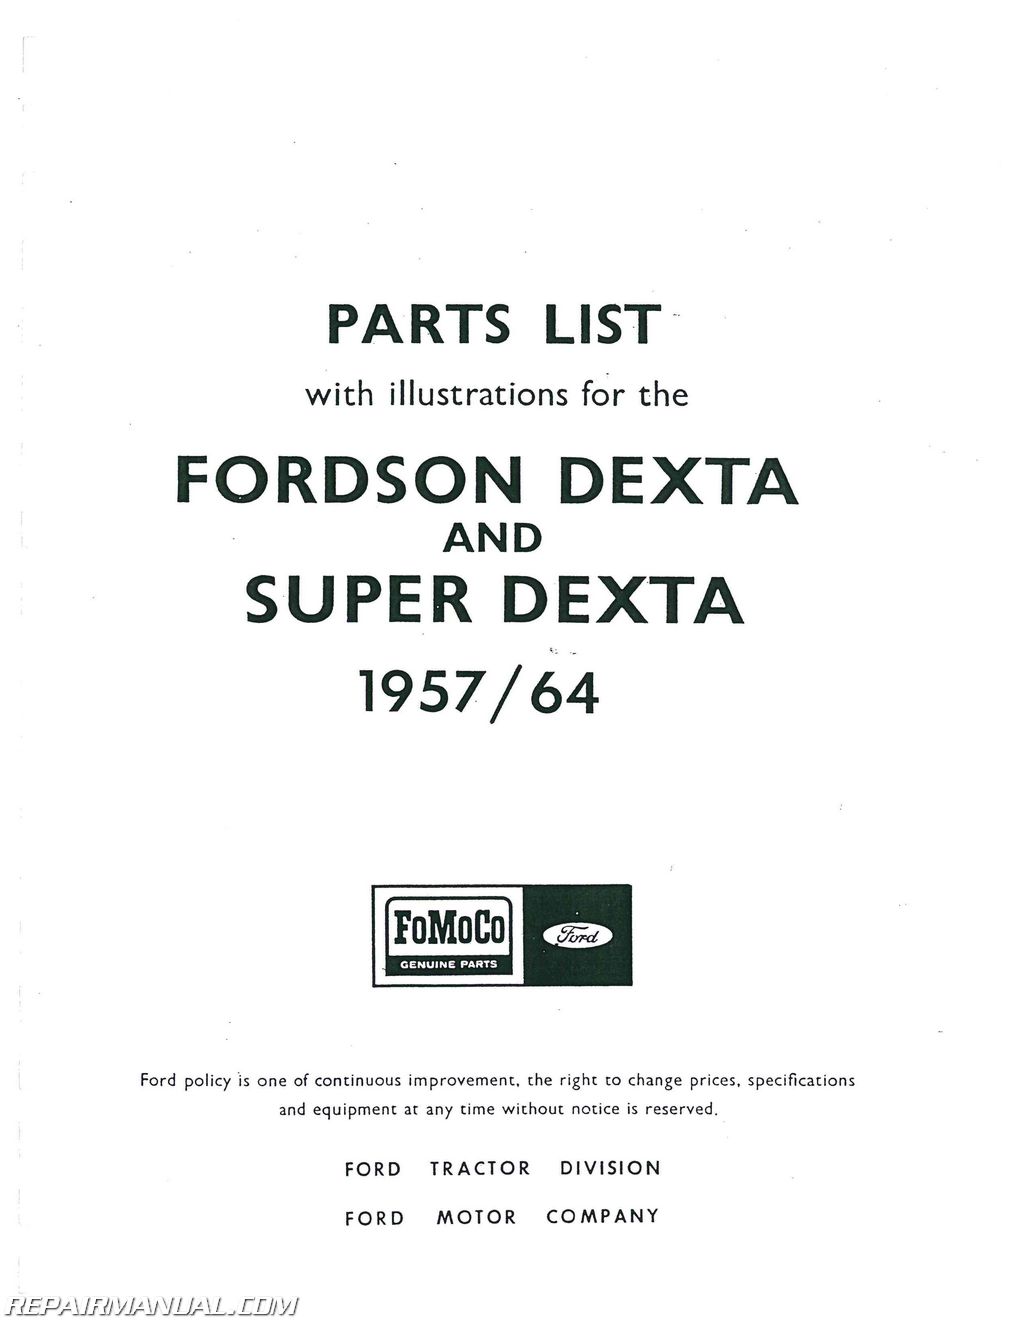 Ford dexta manual pdf